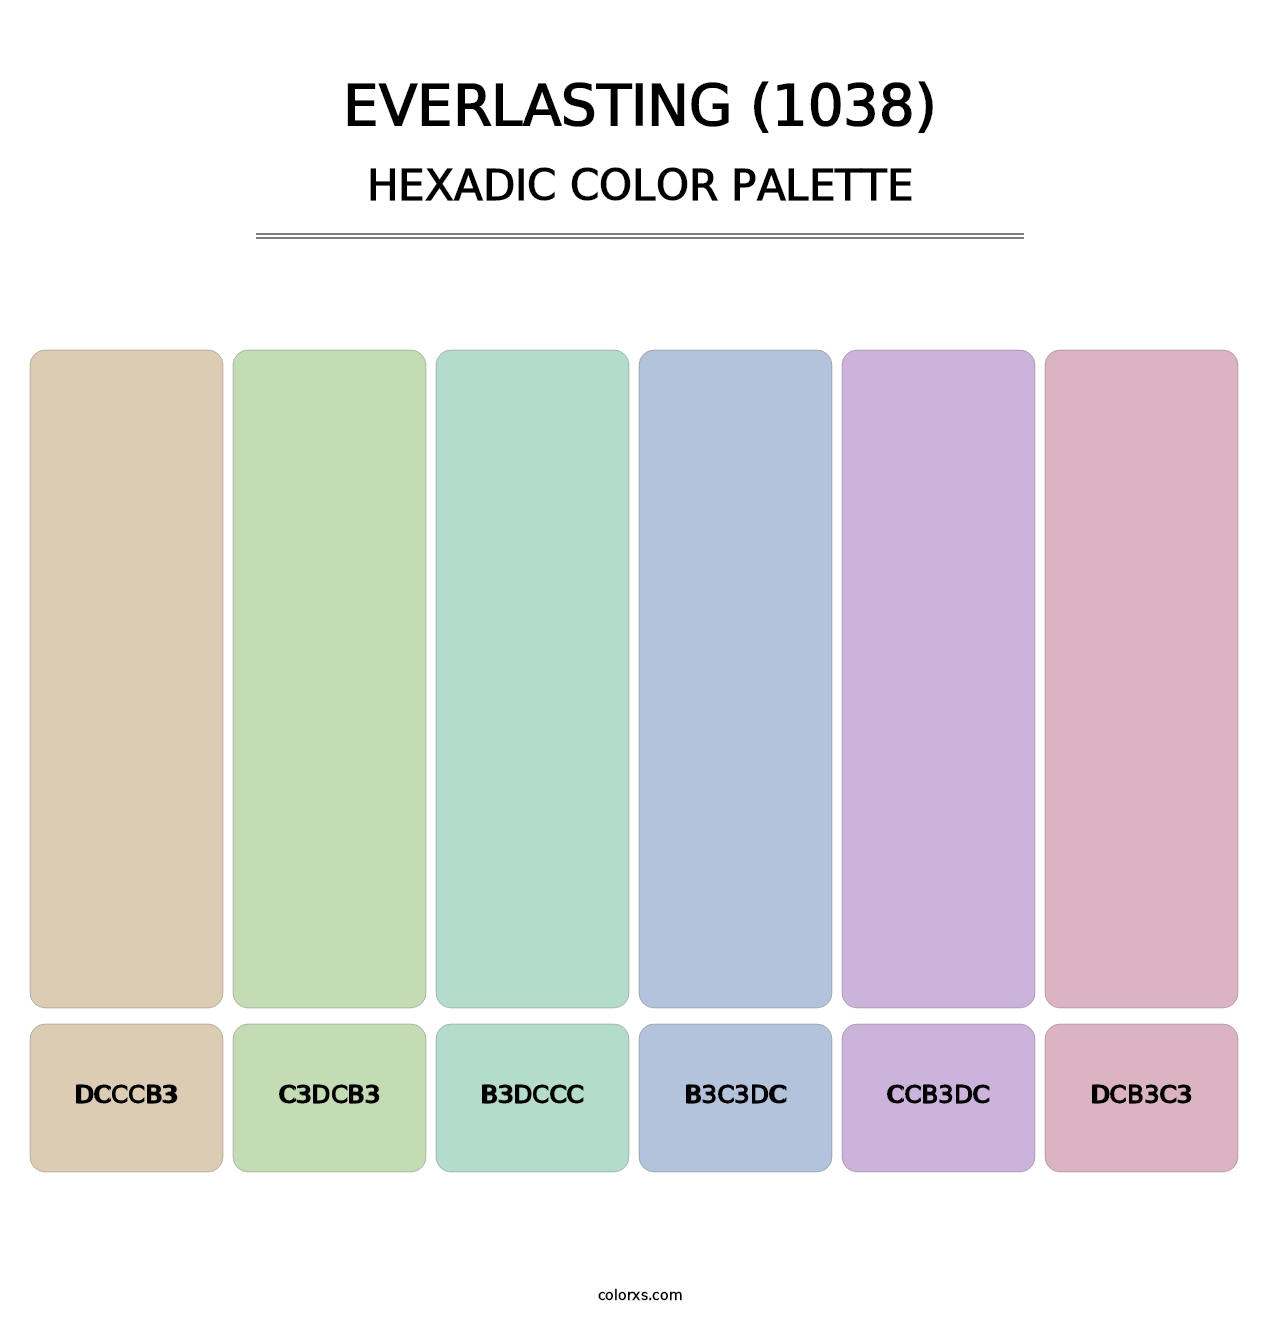 Everlasting (1038) - Hexadic Color Palette